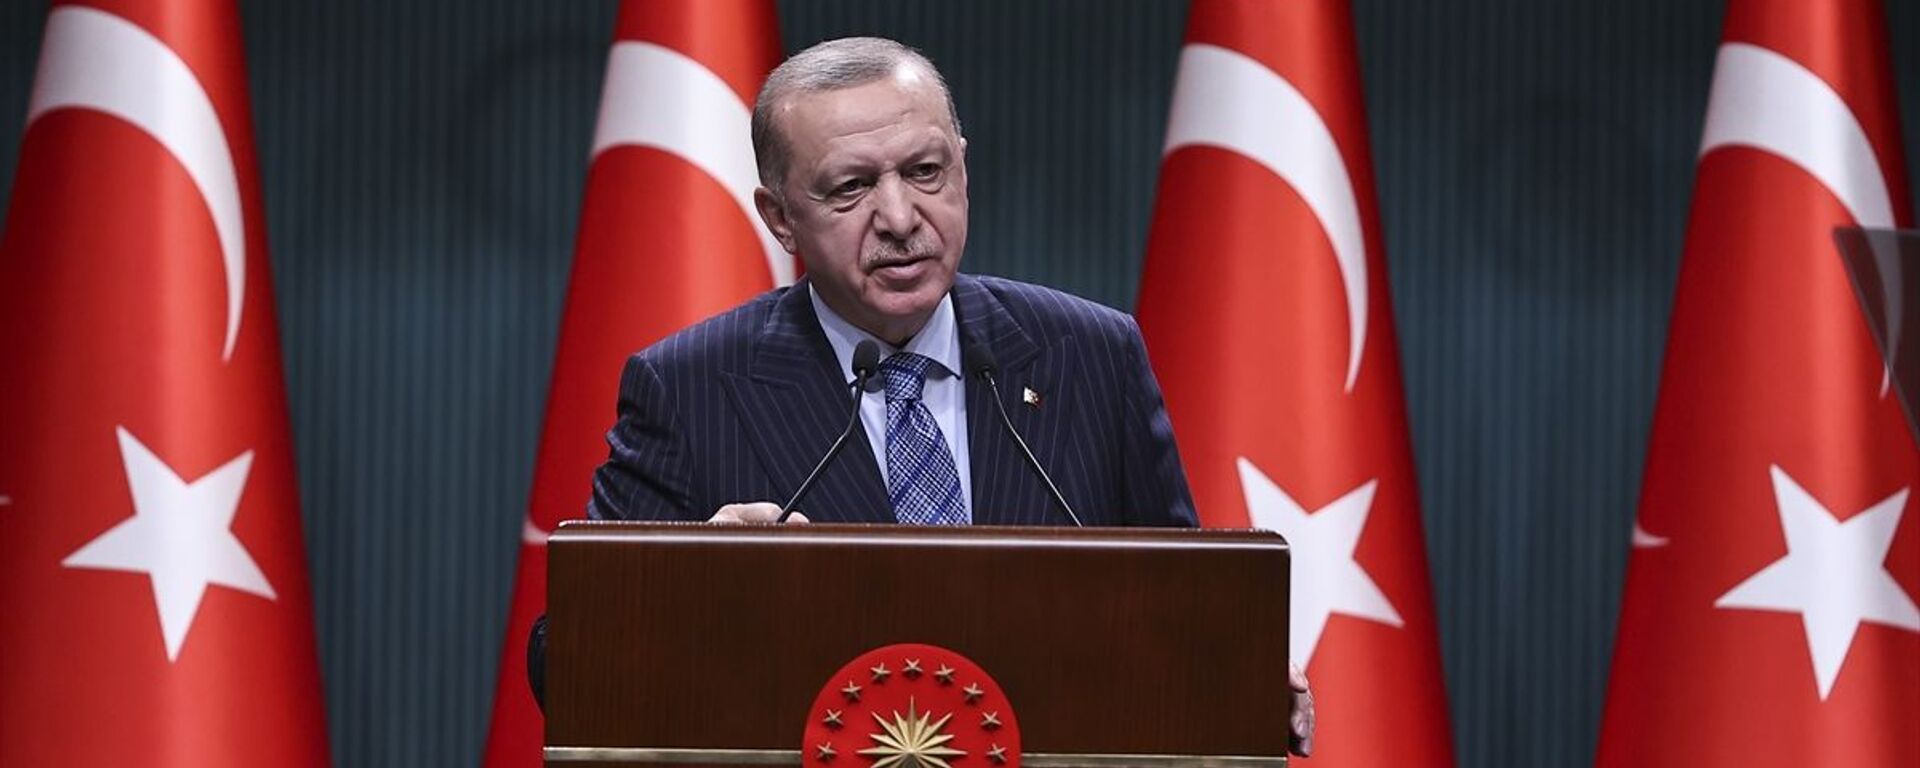 Türkiye Cumhurbaşkanı Recep Tayyip Erdoğan, Cumhurbaşkanlığı Kabine Toplantısı'nın ardından açıklamalarda bulundu. - Sputnik Türkiye, 1920, 17.05.2021